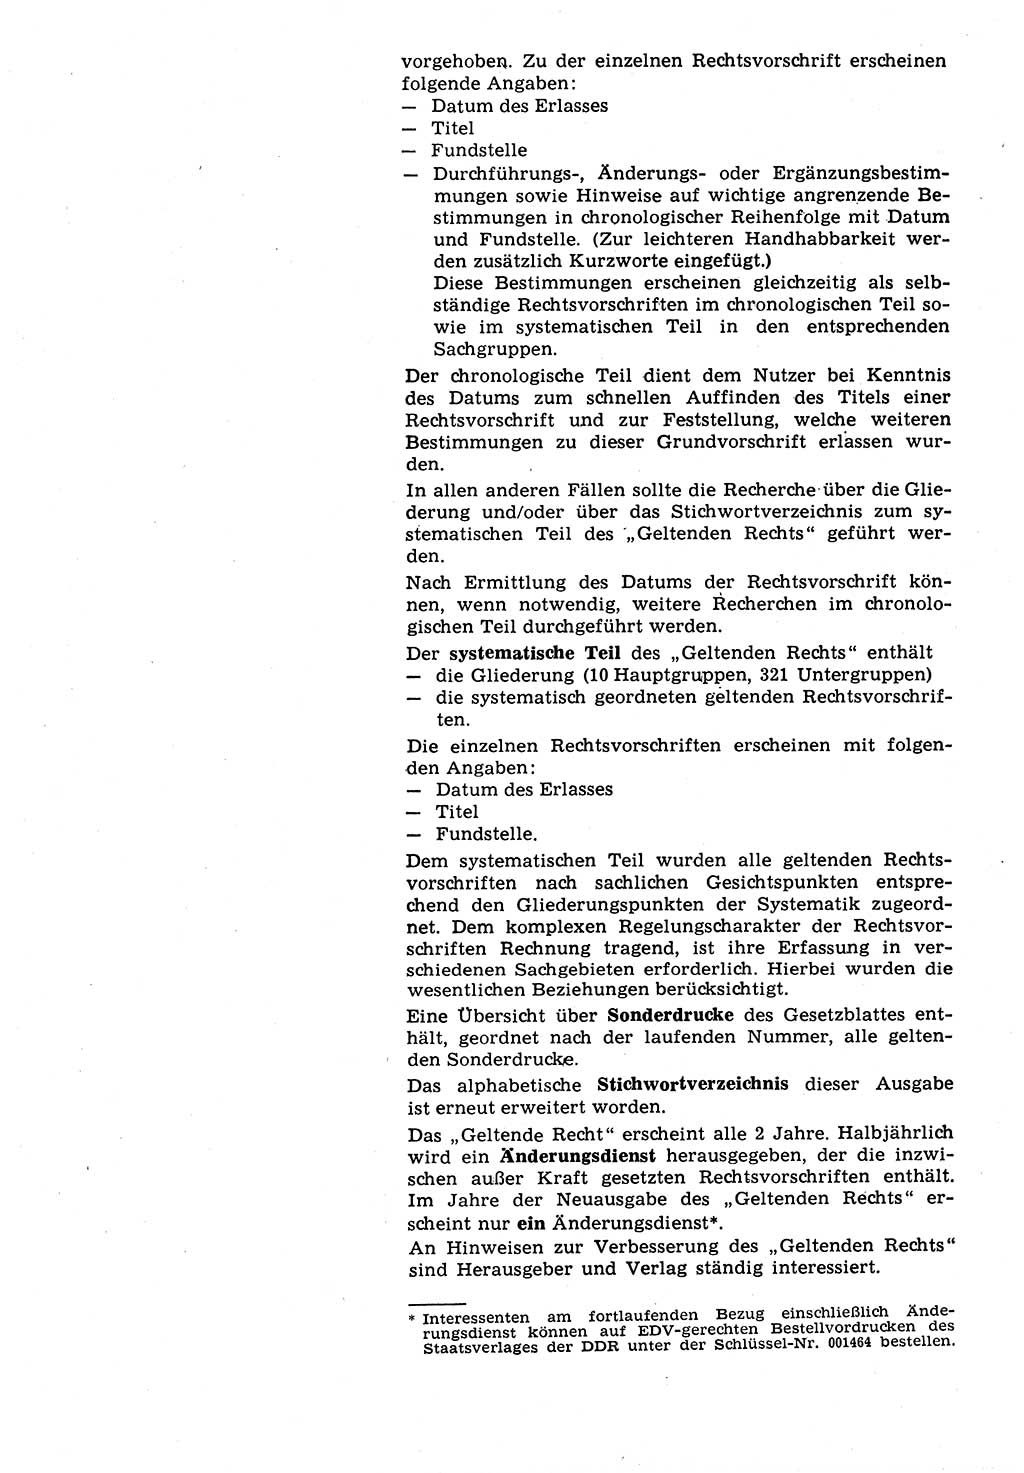 Das geltende Recht der Deutschen Demokratischen Republik (DDR) 1949-1988, Seite 8 (Gelt. R. DDR 1949-1988, S. 8)